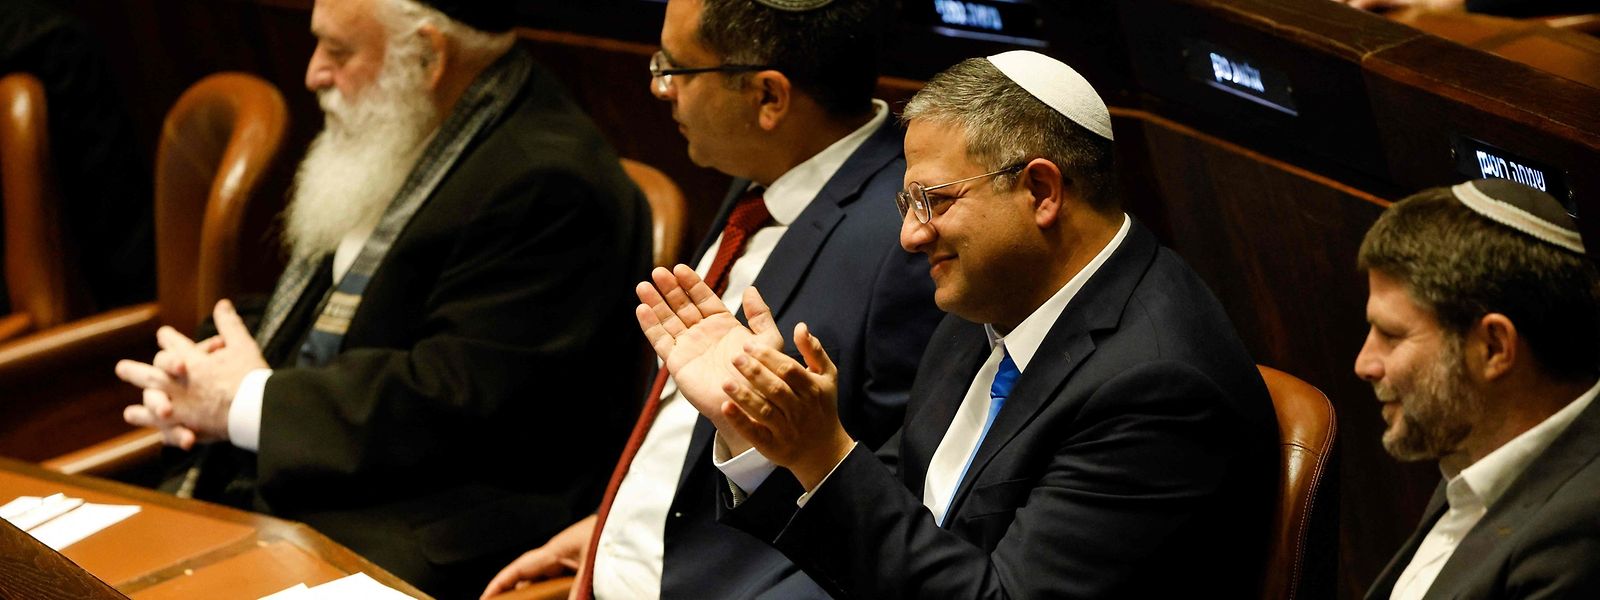 Die Vertreter des rechten Flügels im Knesset, Itamar Ben-Gvir (2. v. r.) und Bezalel Smotrich (r.), wohnten der Vereidigung der neuen Regierung während der Parlamentssitzung am Donnerstag bei. 